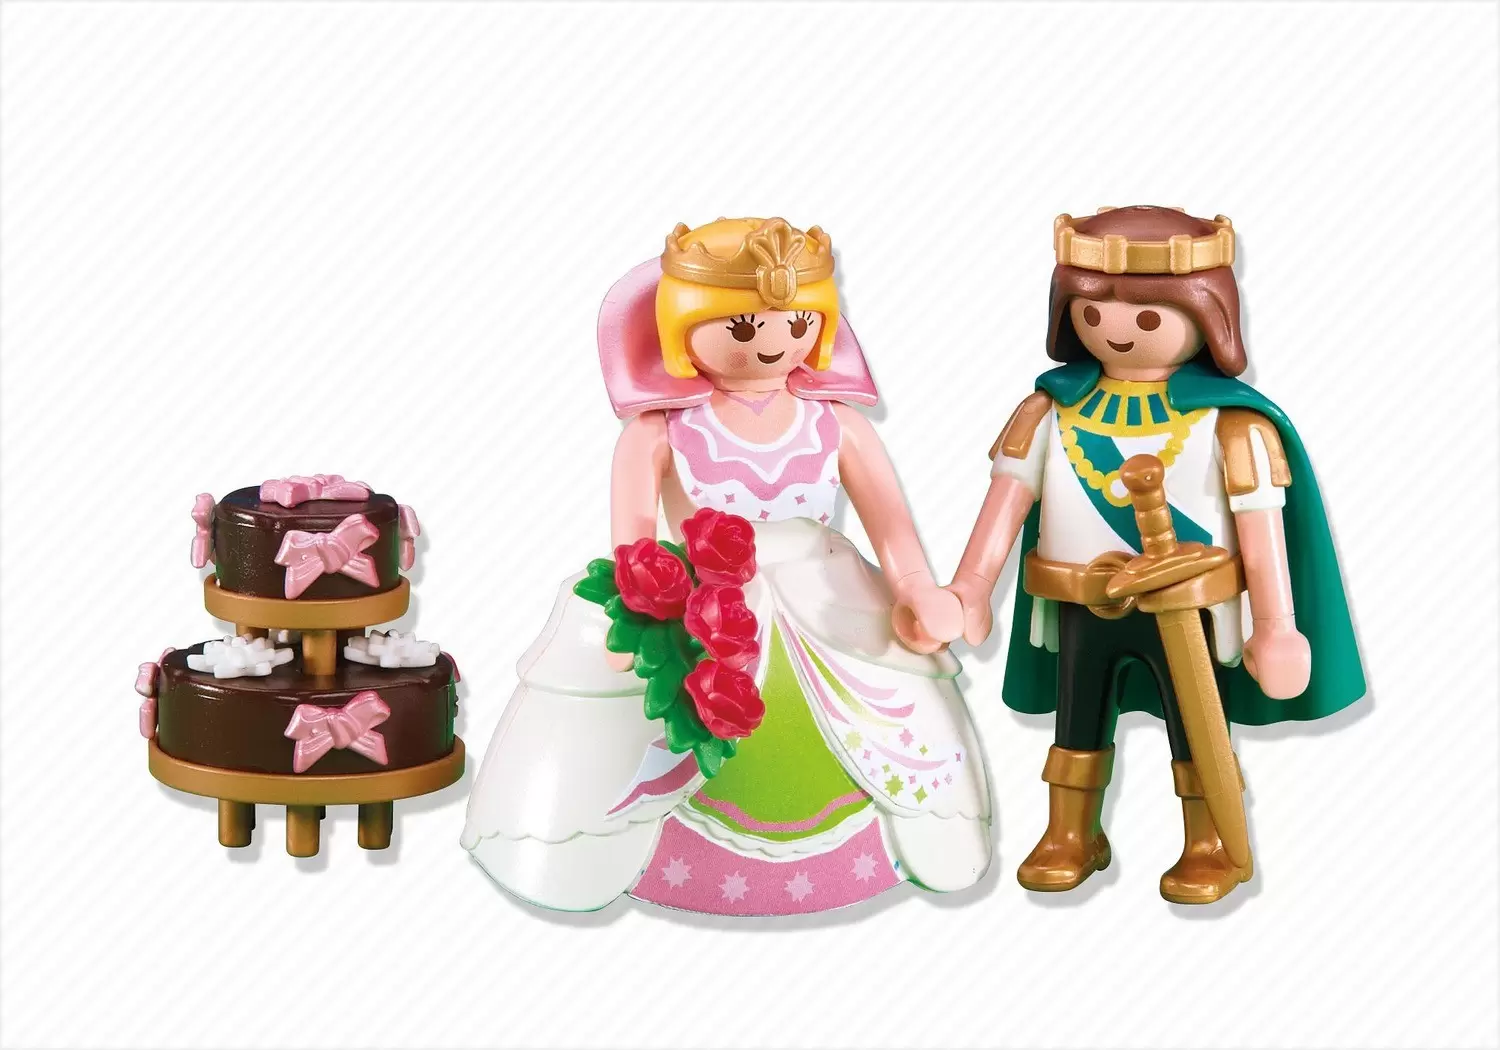 Playmobil Princess - Royal Couple with Wedding Cake